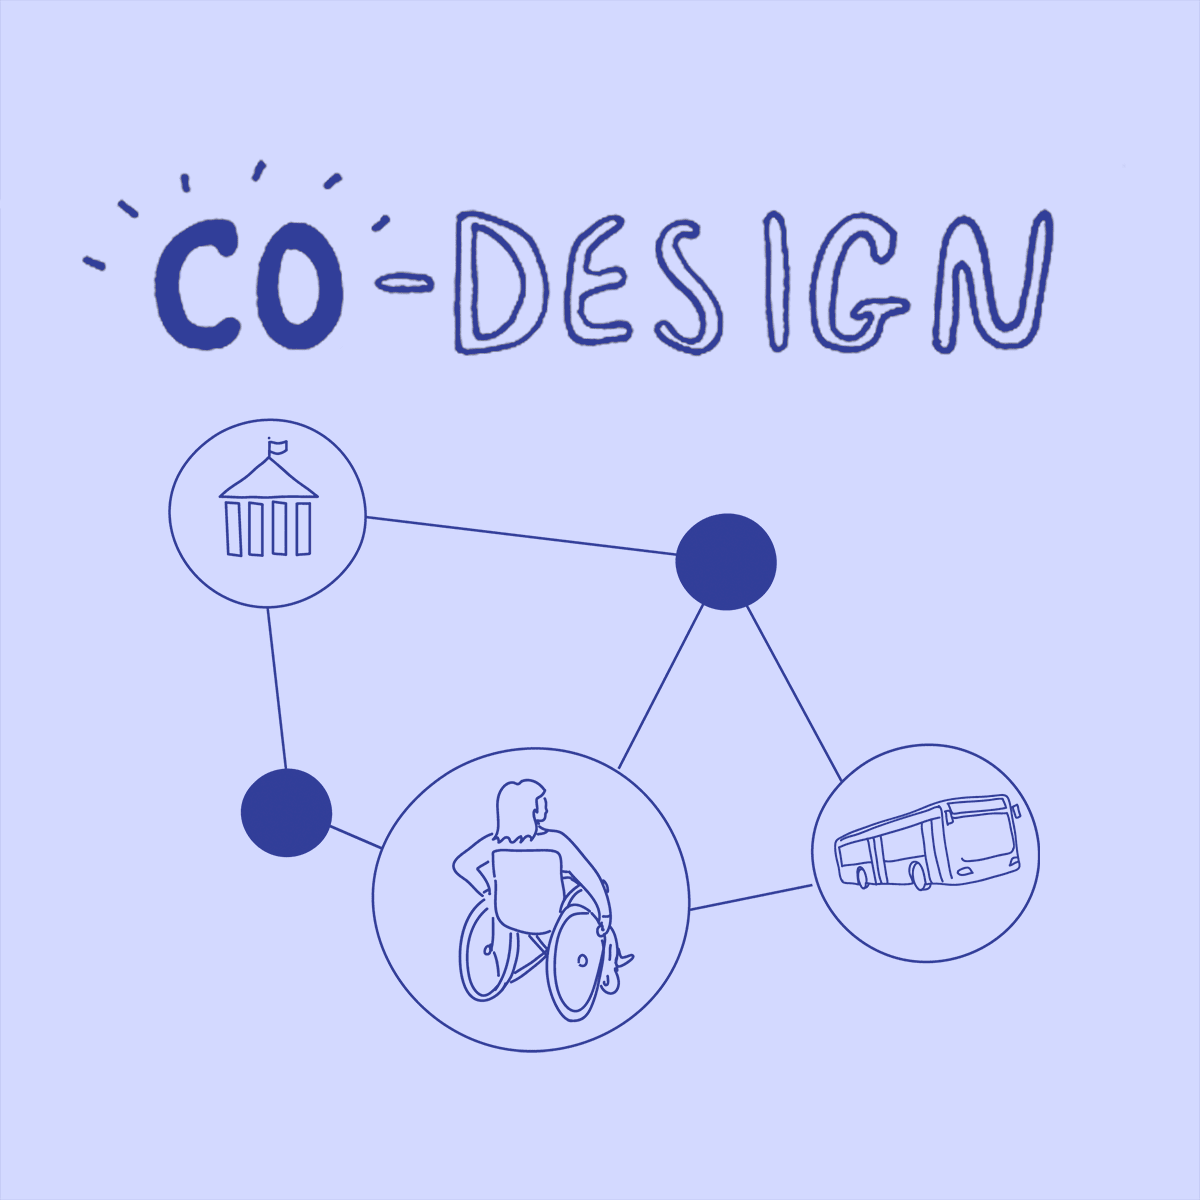 طراحی مشترک برای همه: انجام طراحی مشترک در عمل